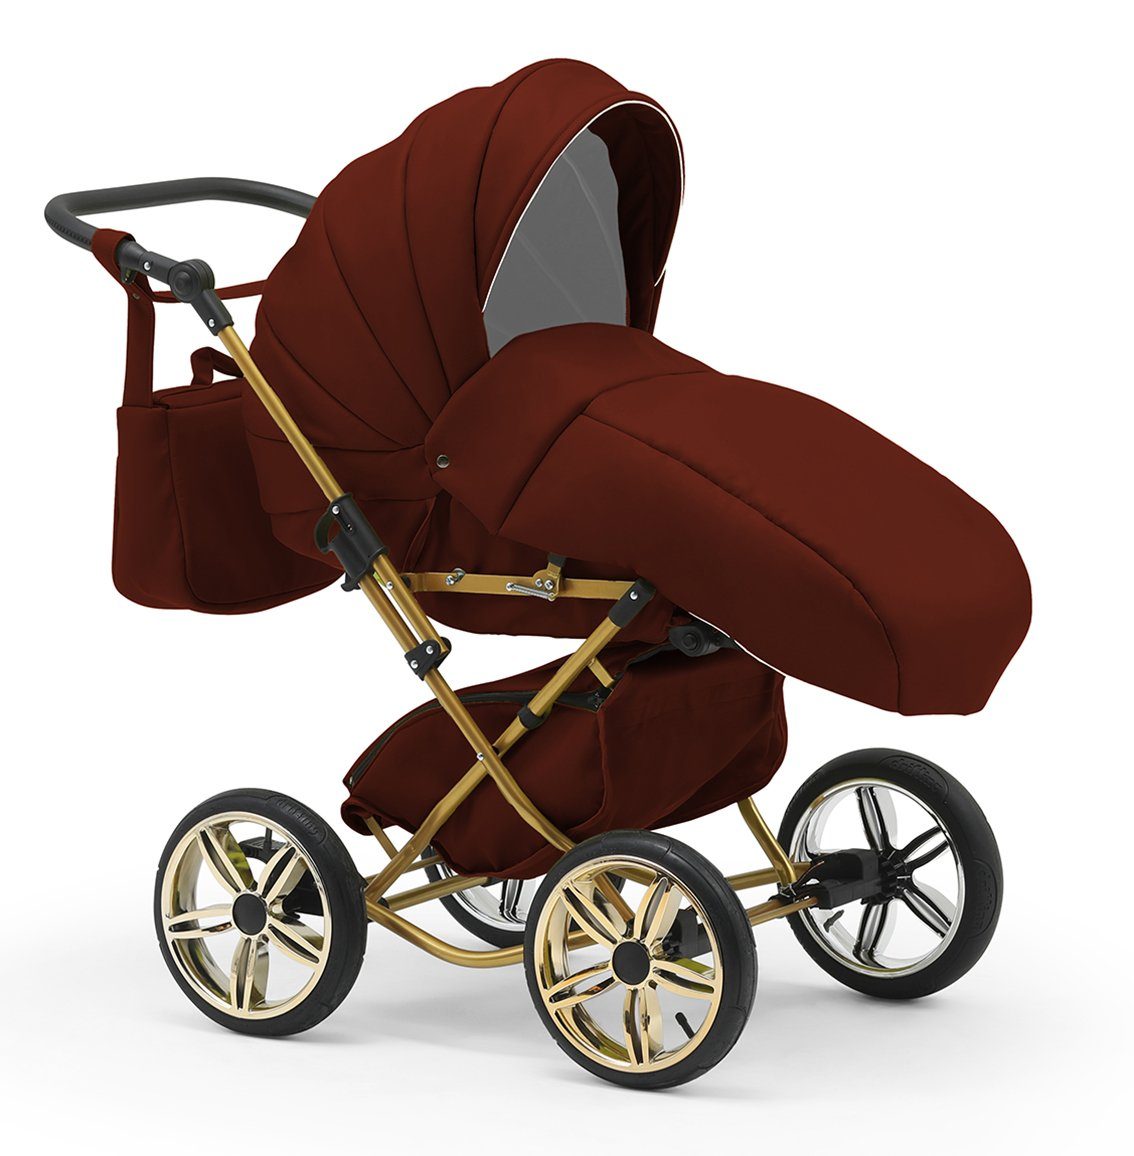 Designs in - babies-on-wheels Teile Kombi-Kinderwagen 10 in 3 1 13 Autositz Sorento - inkl. Bordeaux